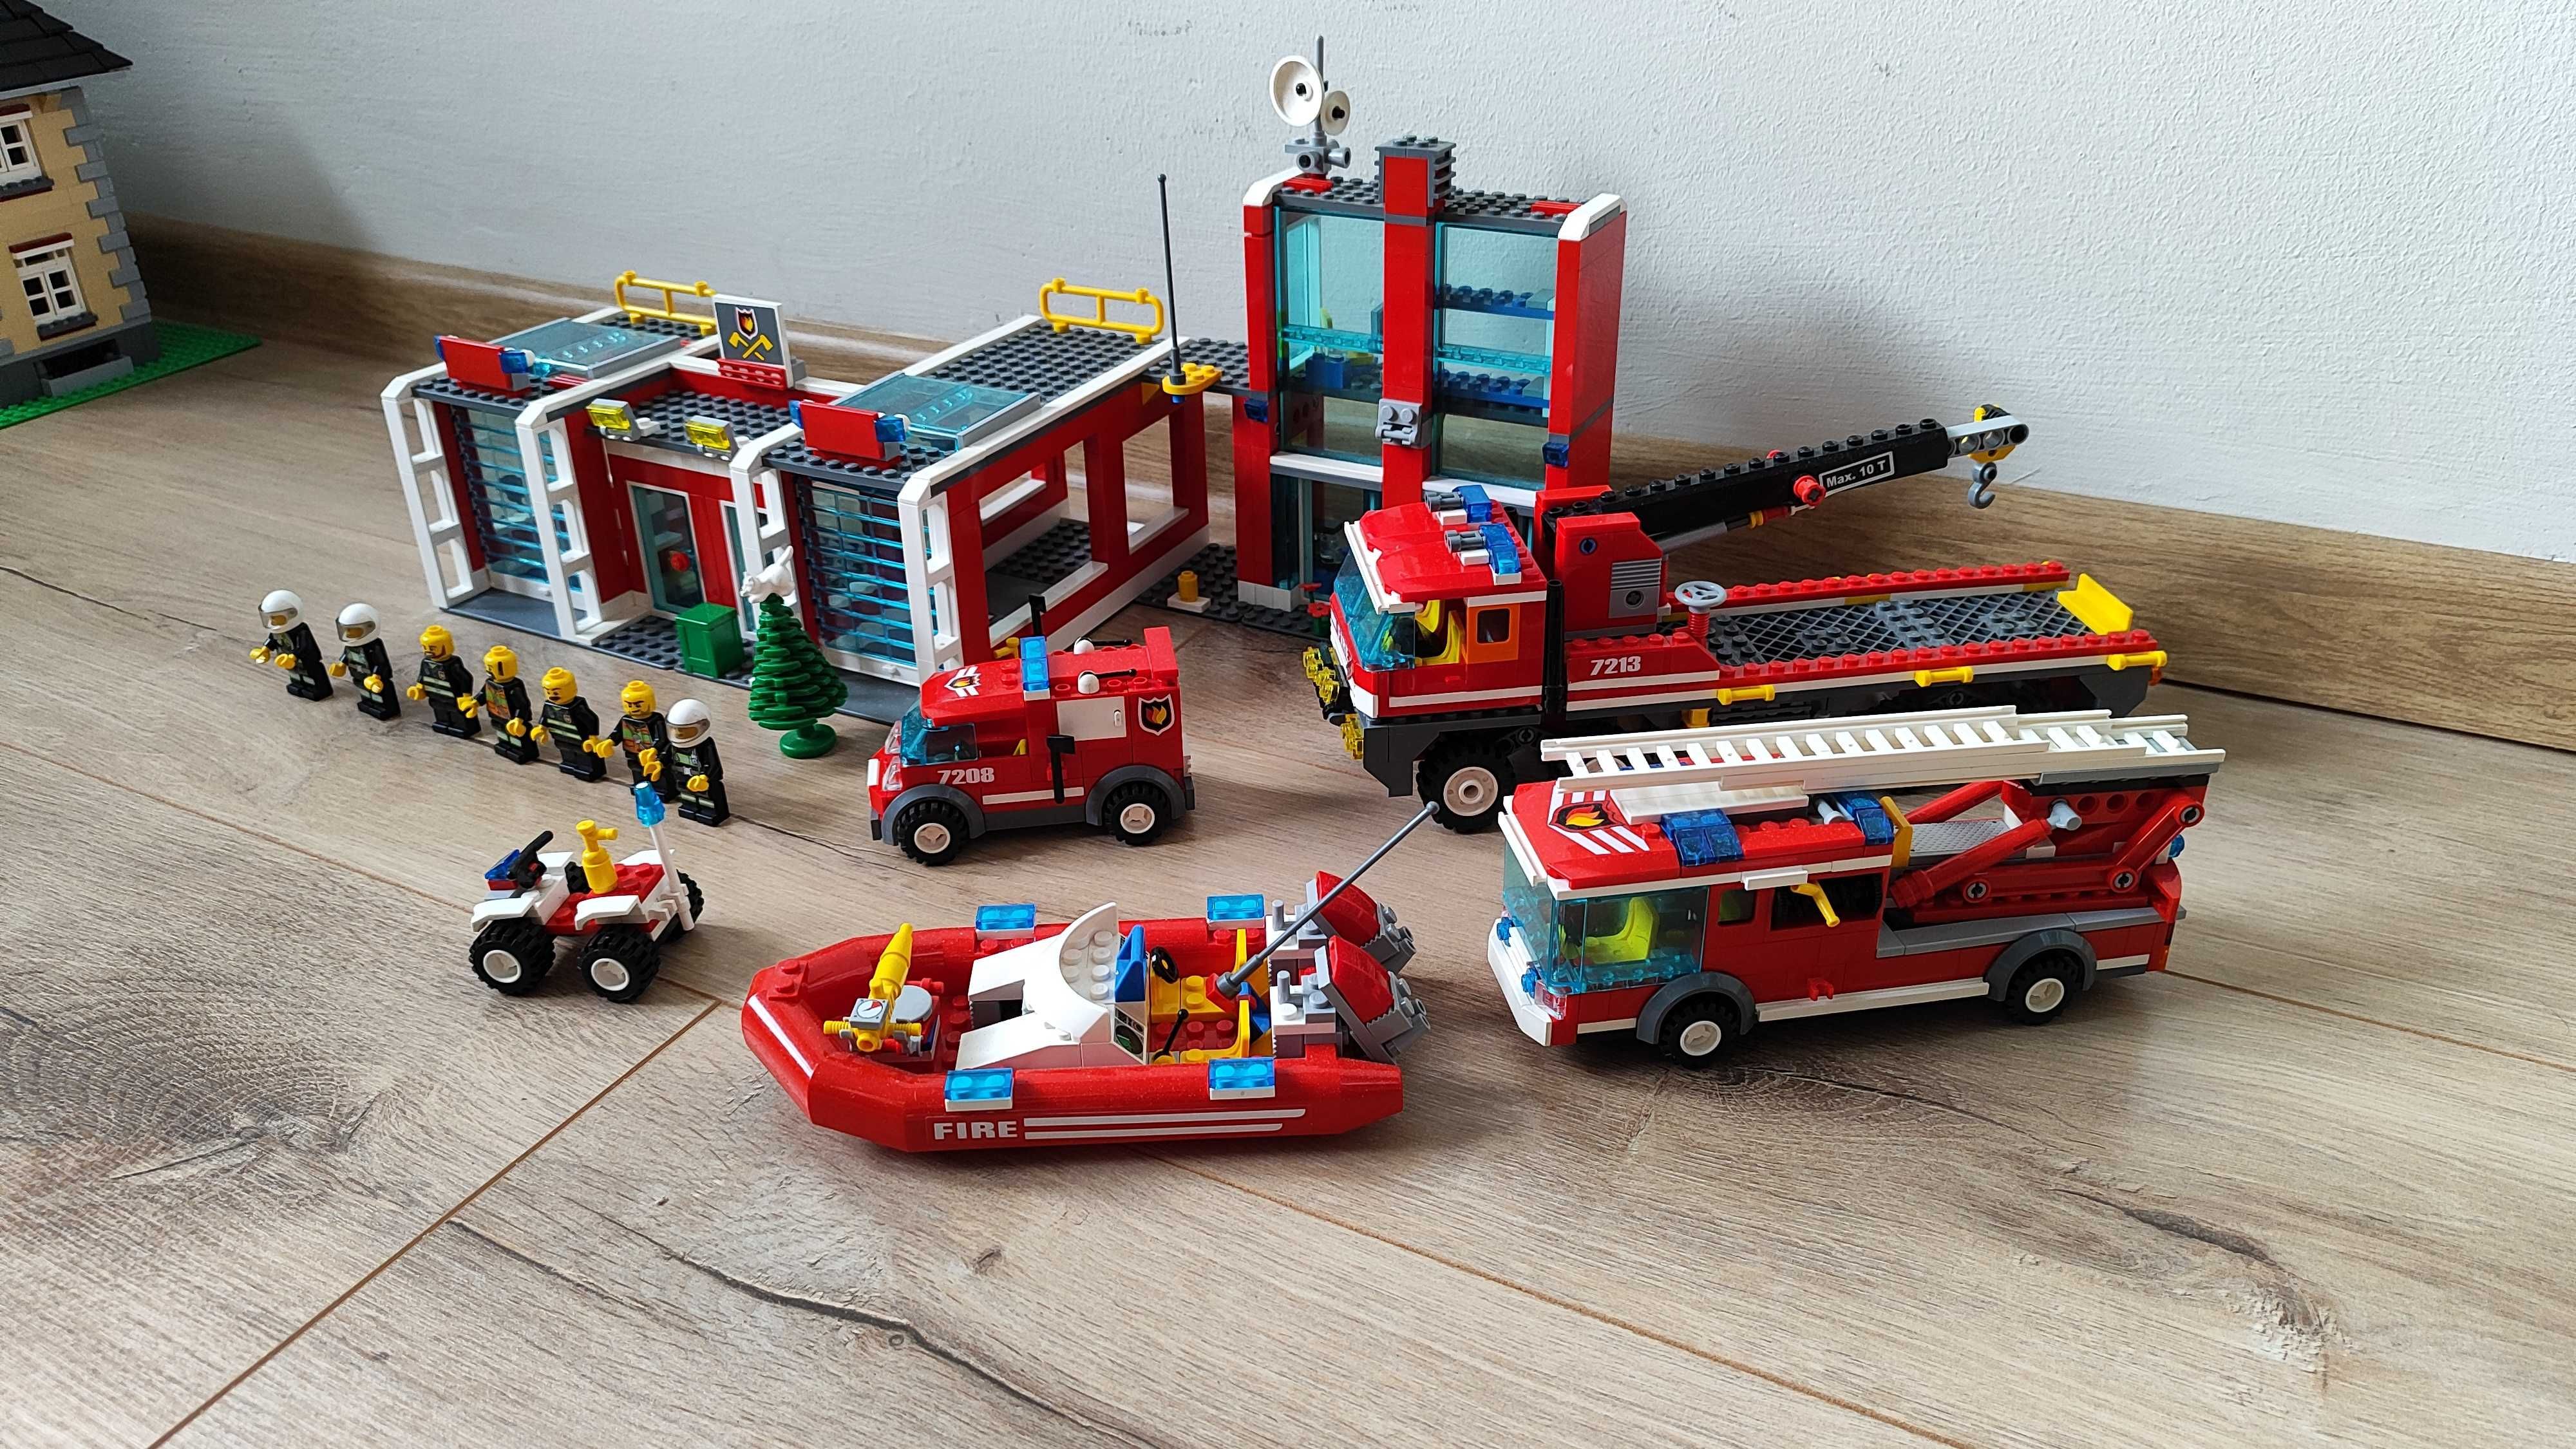 LEGO City 7208 Straż Pożarna Remiza Strażacka 7213 Terenowy wóz